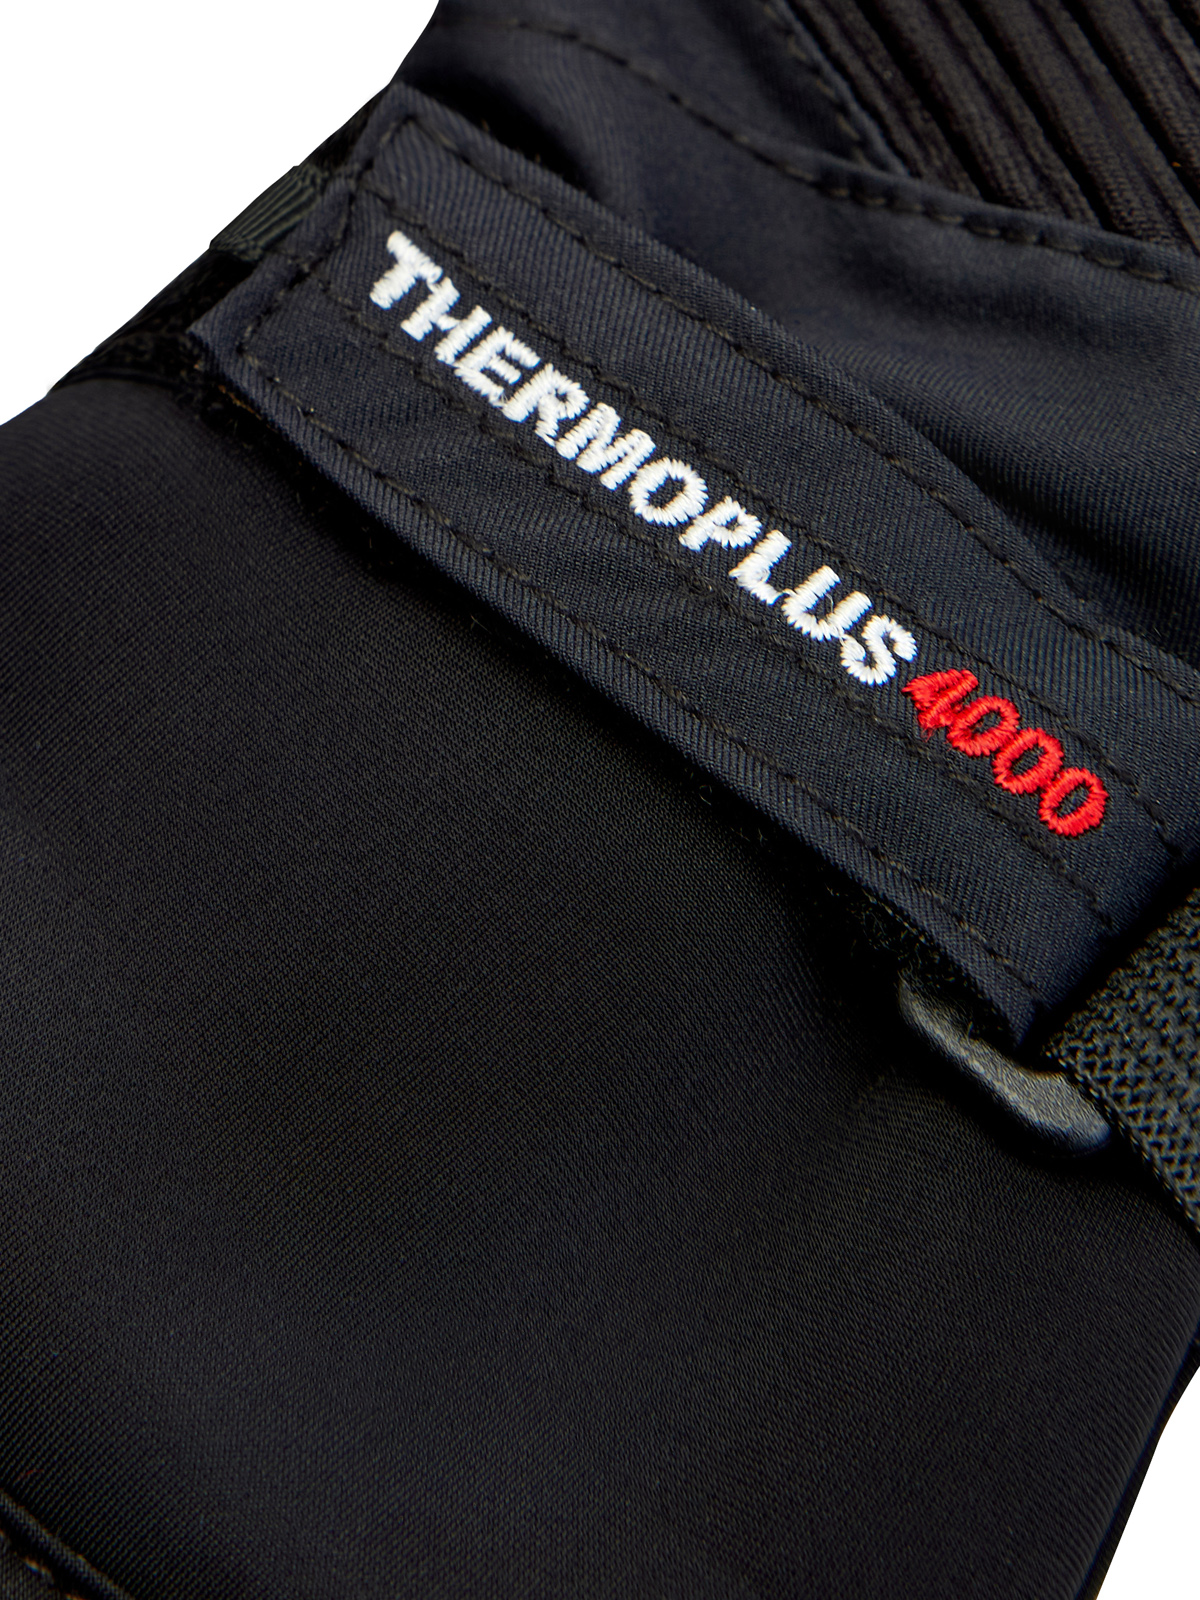 Утепленные перчатки с термозащитой thermo-plus и кожаными вставками COLMAR, цвет черный, размер XL;M;L - фото 4